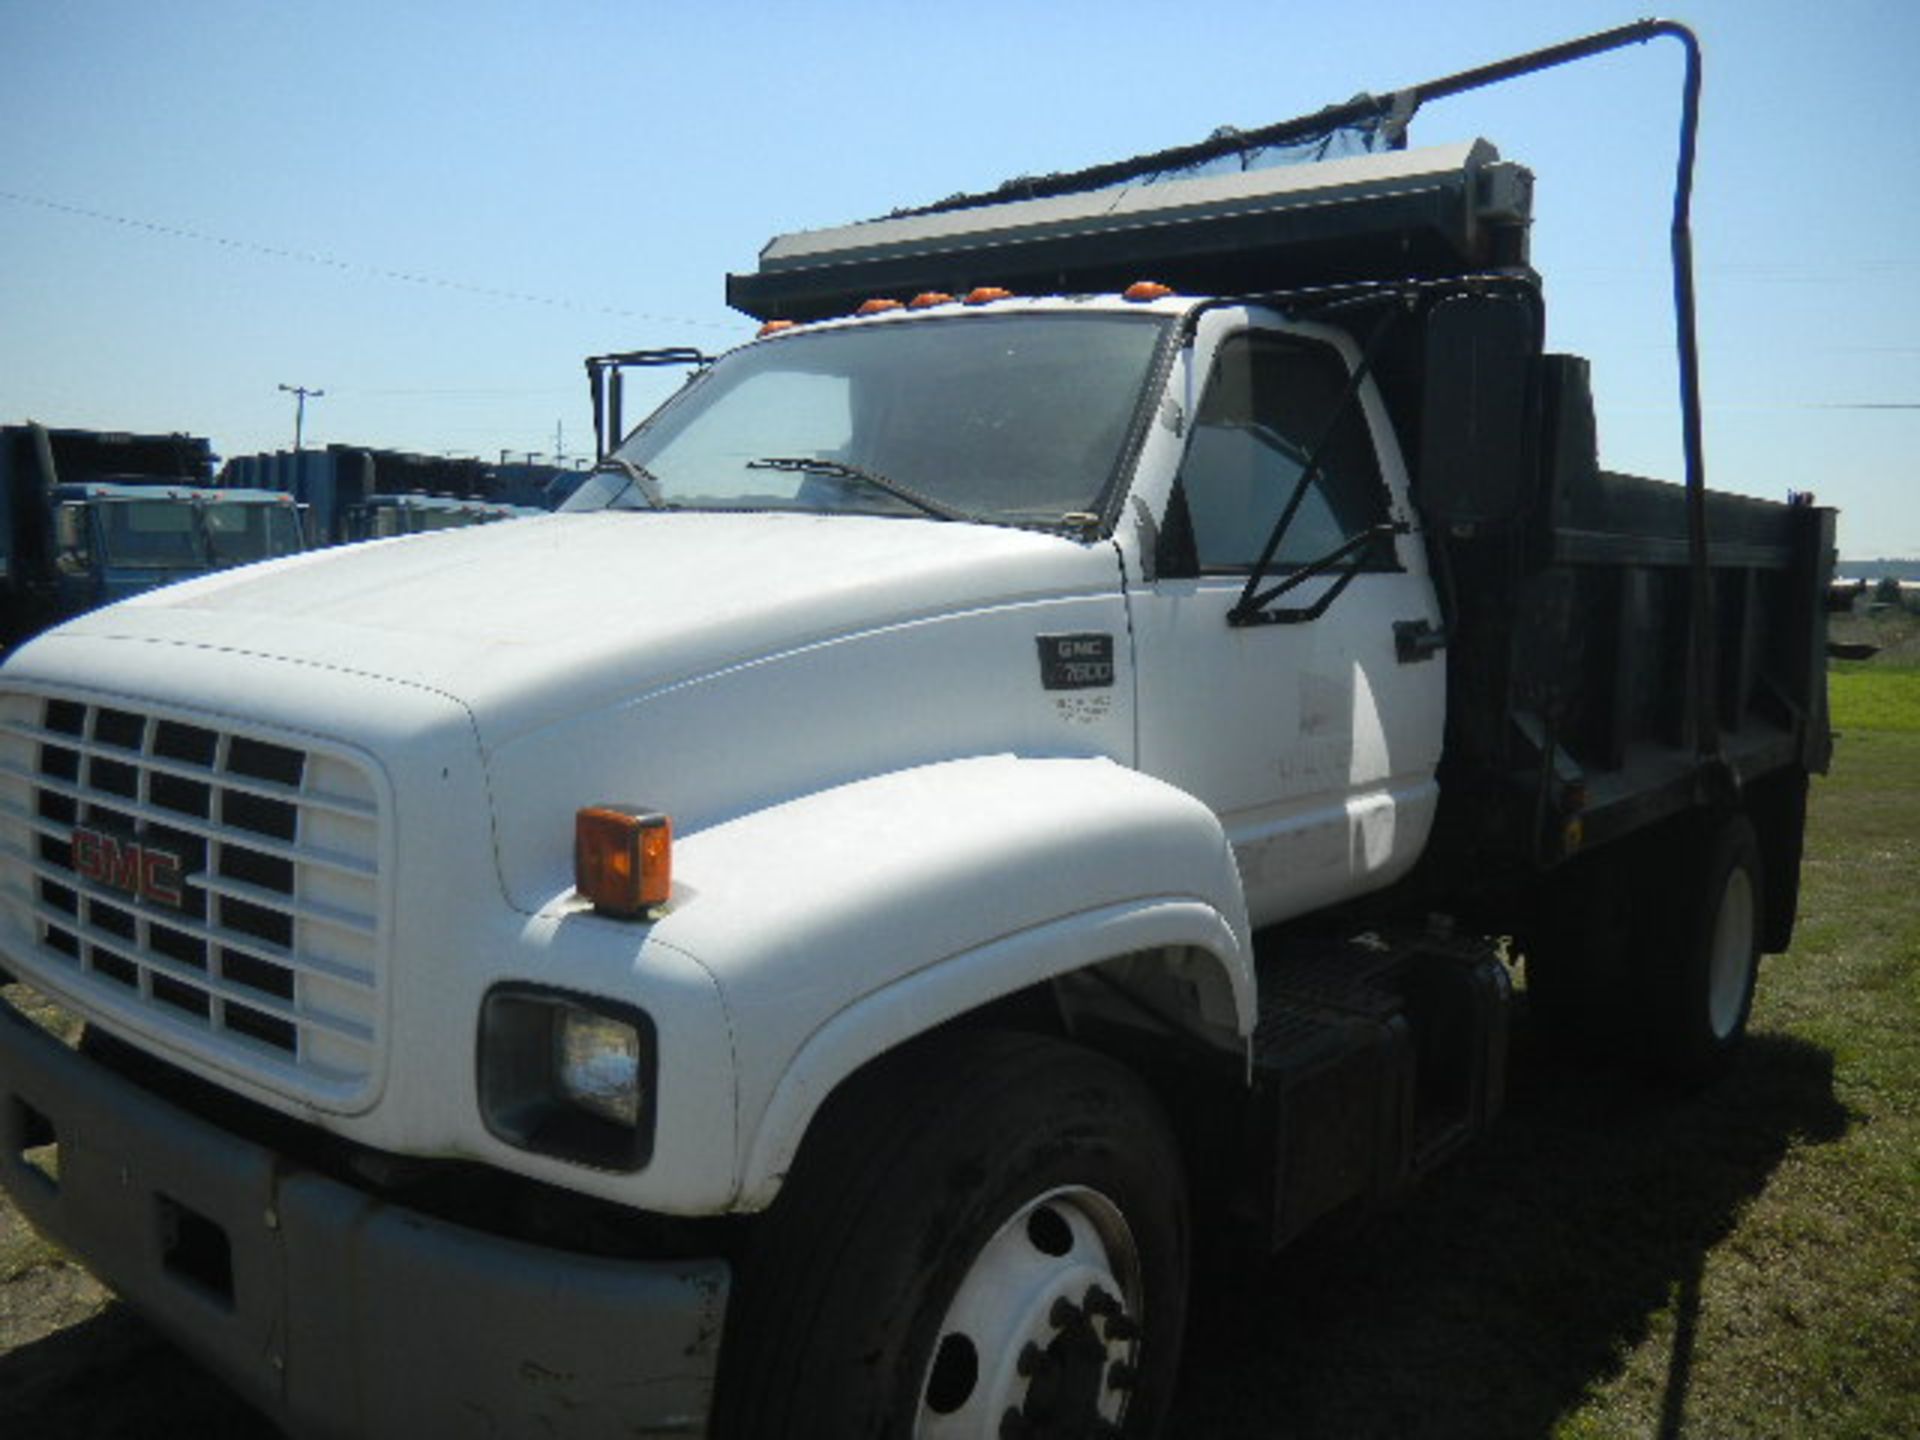 2000 GMC C7500 White 2 Ton Dump Truck - Asset I.D. #779 - Last of Vin (J503553) - Image 3 of 8